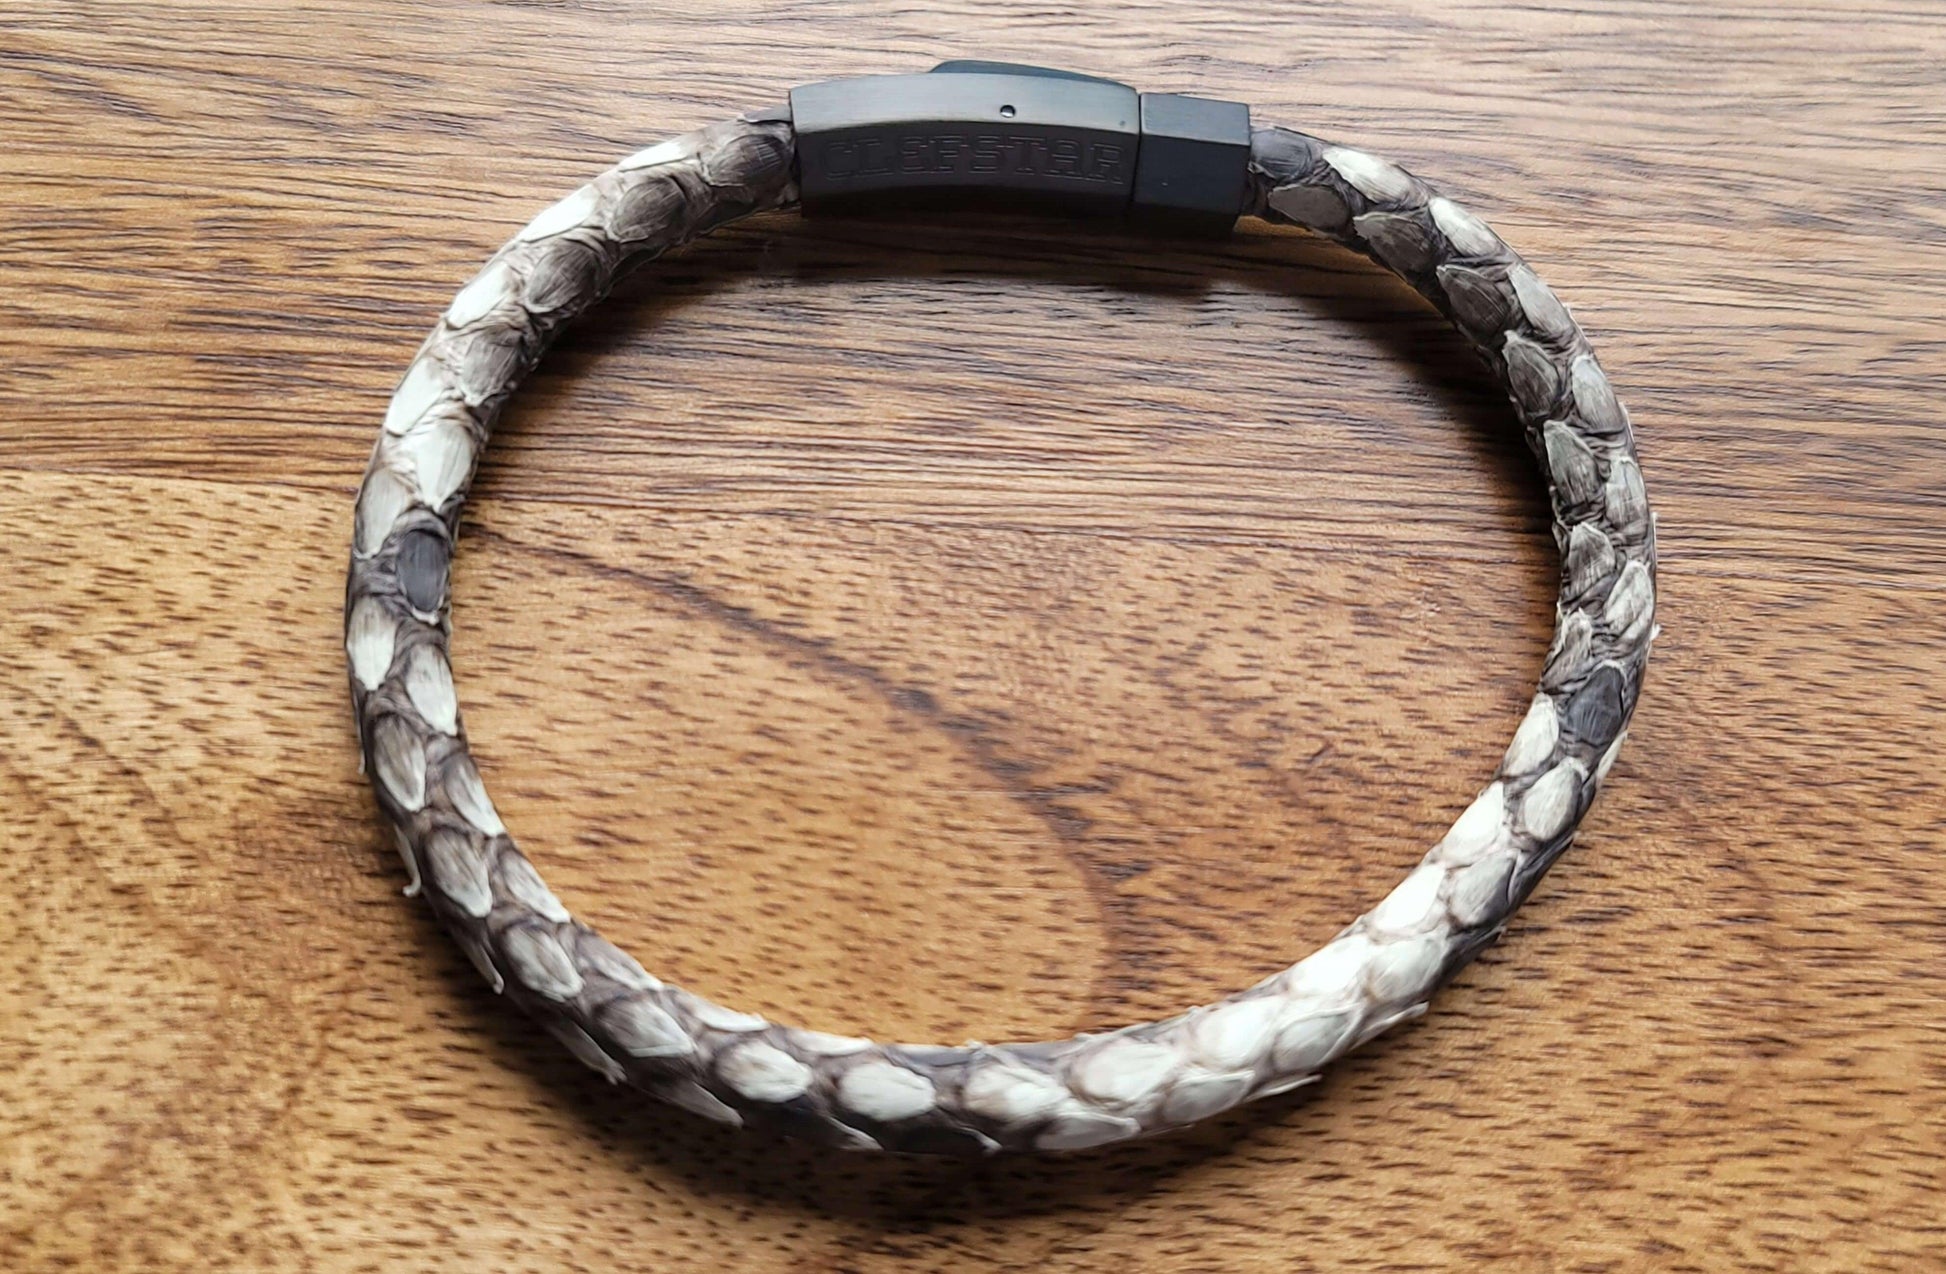 Presto - Sterling Silver - Beaded Bracelets - Handmade - The Cadence Company